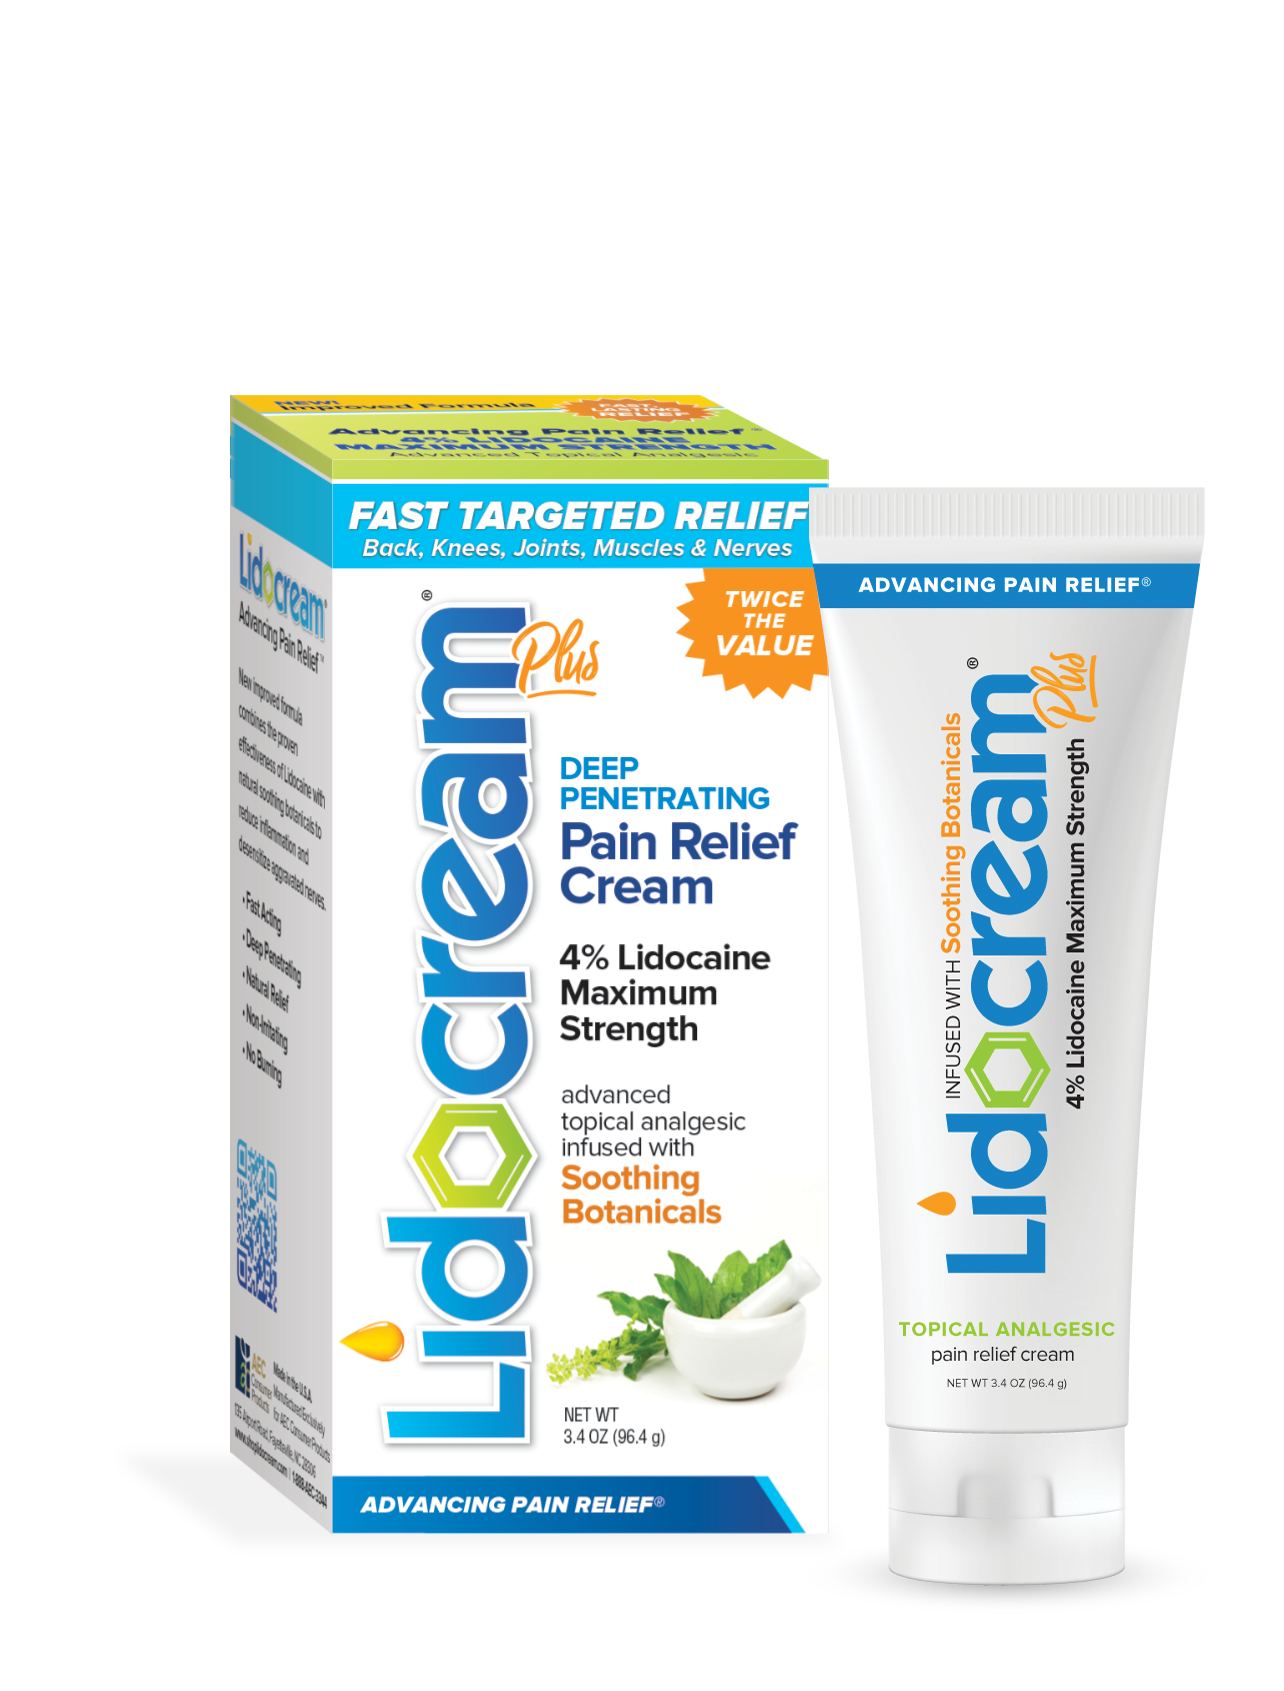 Lidocream® Plus Maximum Strength Pain Relief Cream